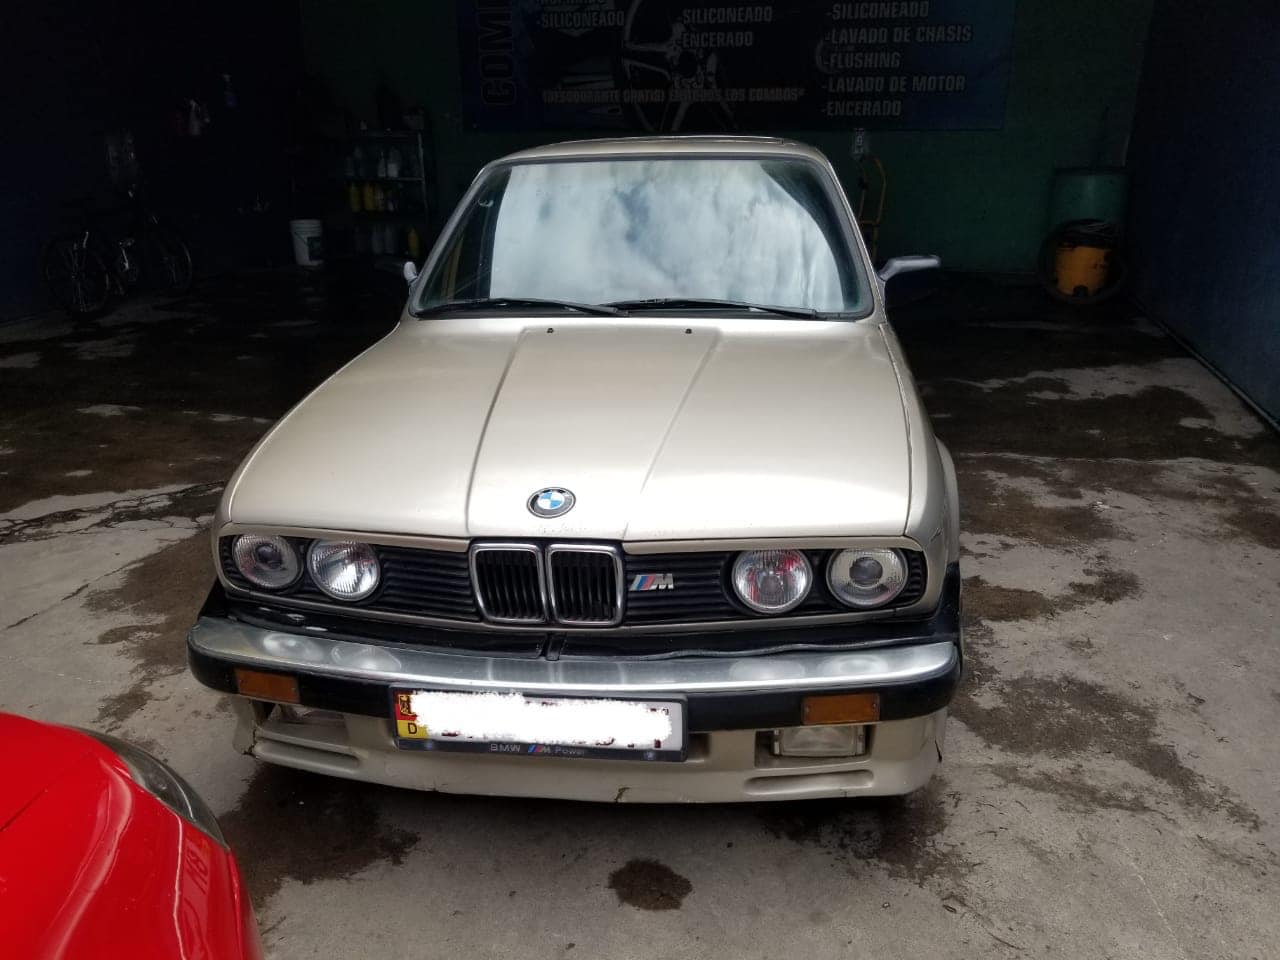 VENDO BONITO BMW CLASICO 318i